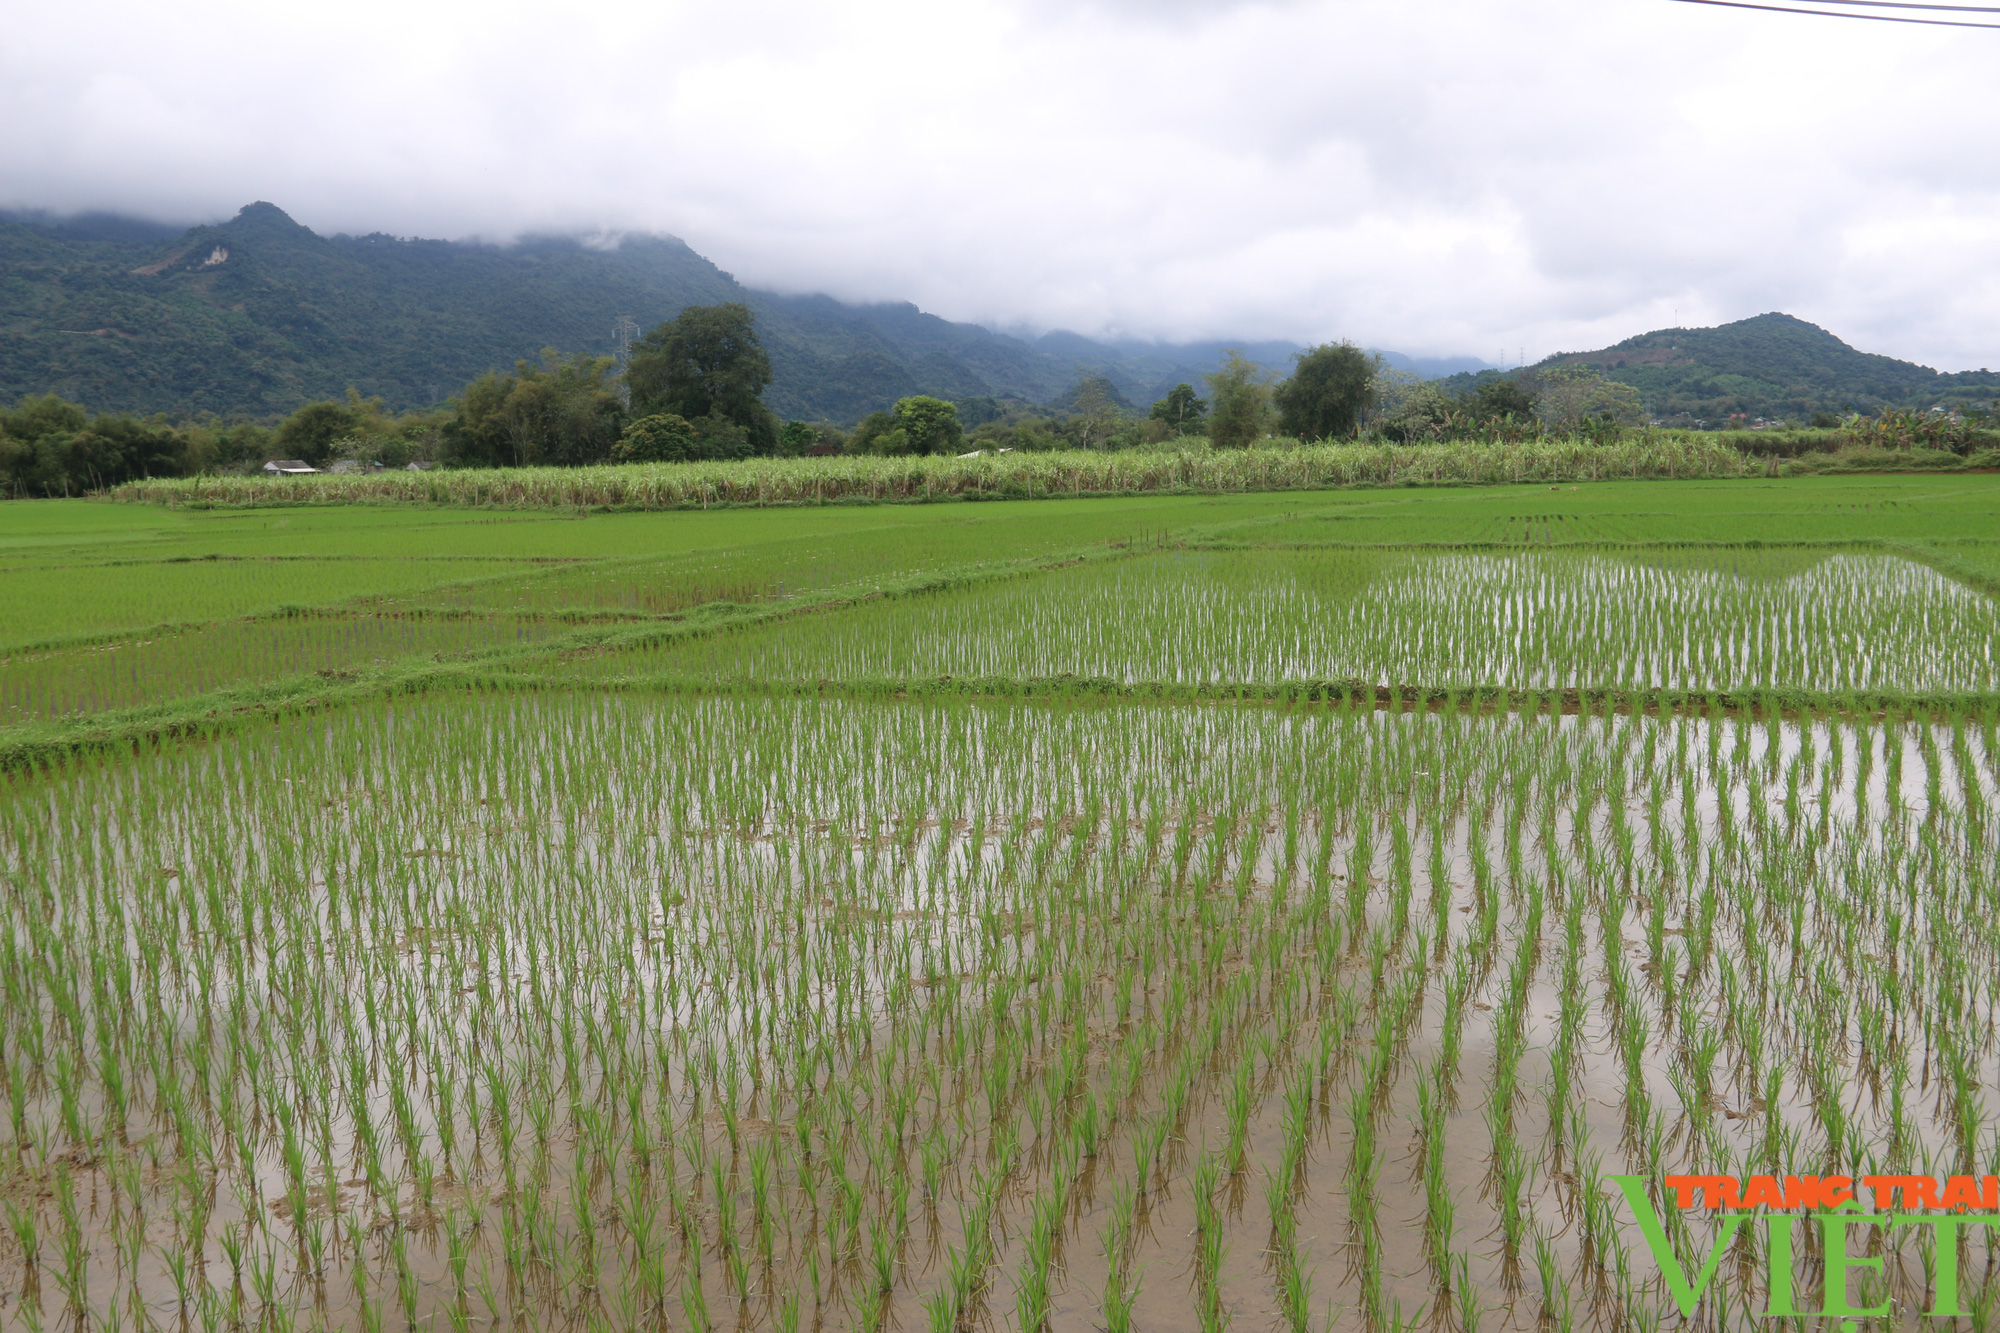 Nông dân huyện Mai Châu: Bảo vệ cây trồng trong điều kiện thời tiết giá rét - Ảnh 3.